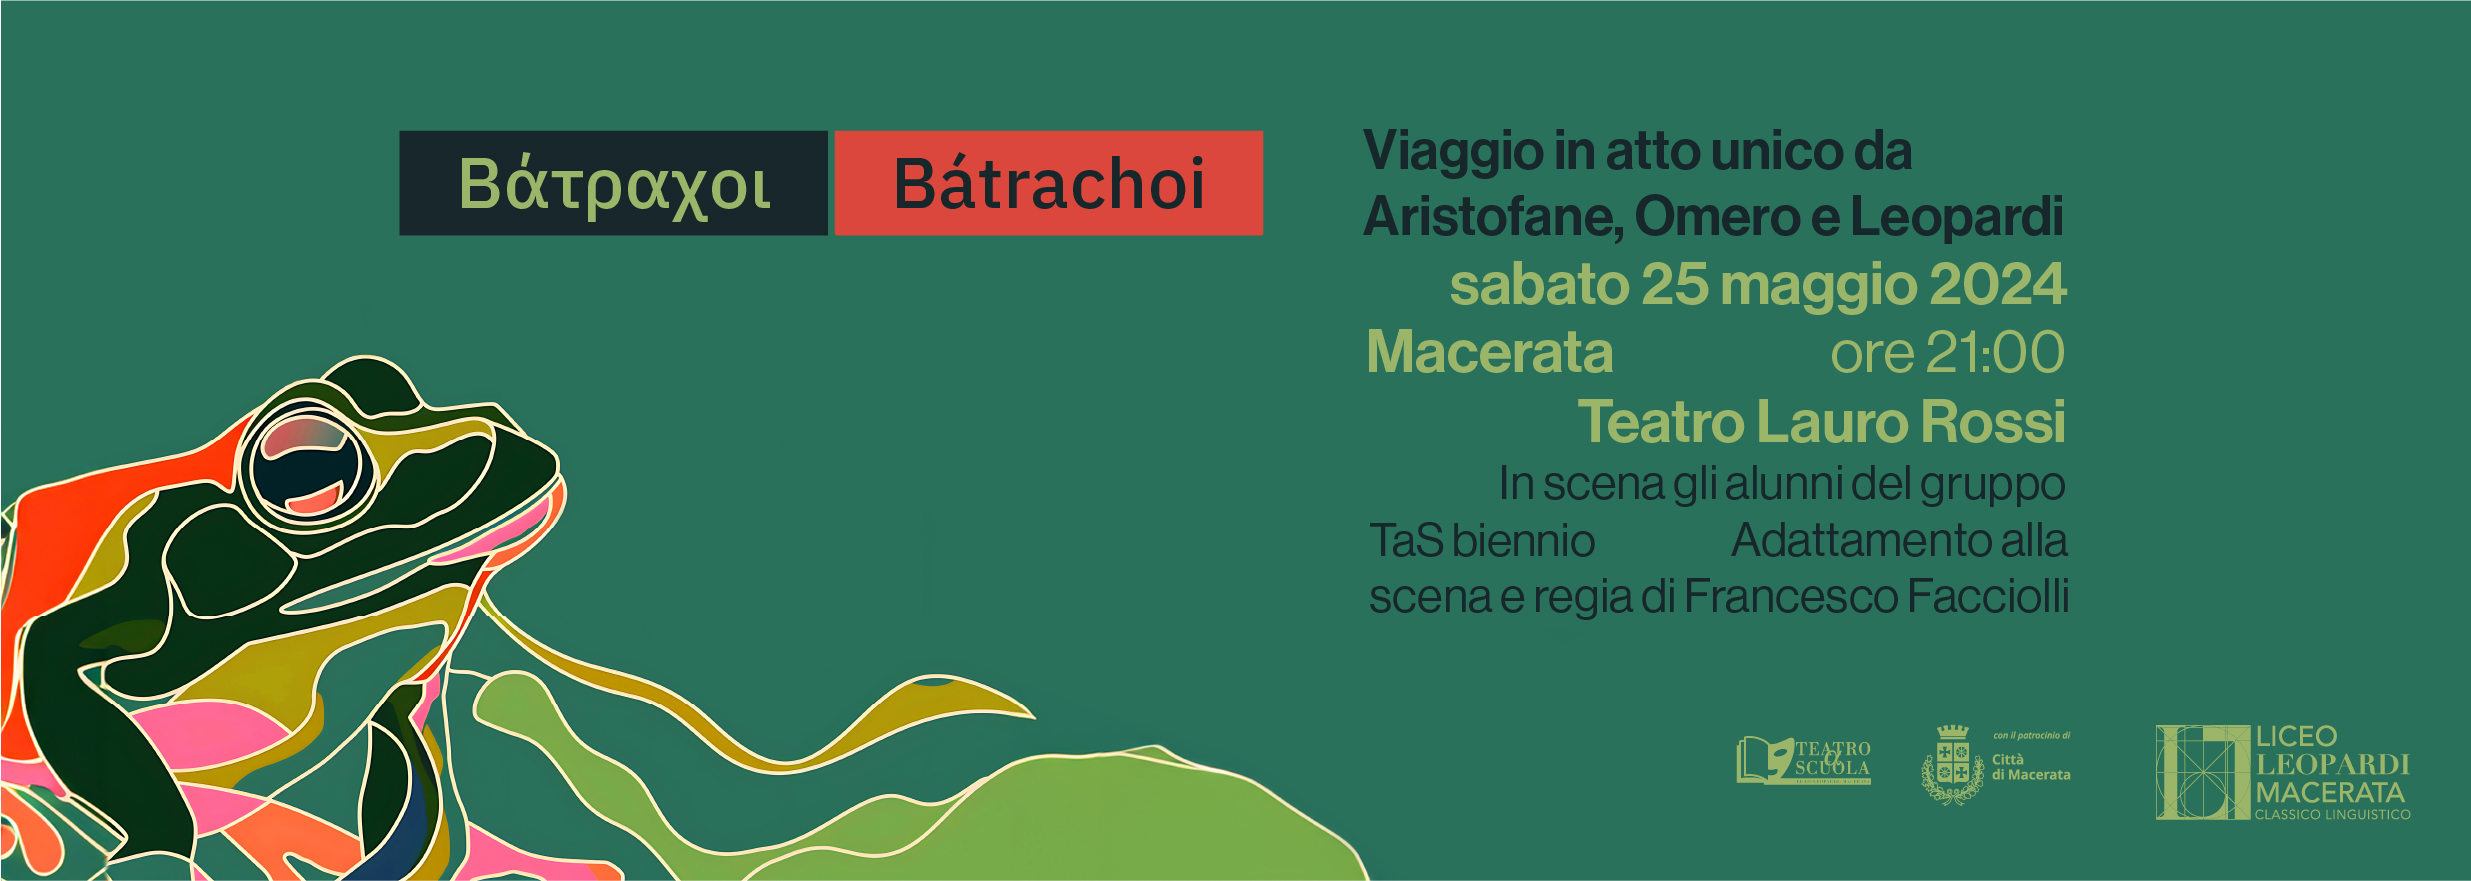 Bátrachoi. Viaggio in atto unico da Aristofane, Omero e Leopardi - Liceo Statale G. Leopardi Macerata